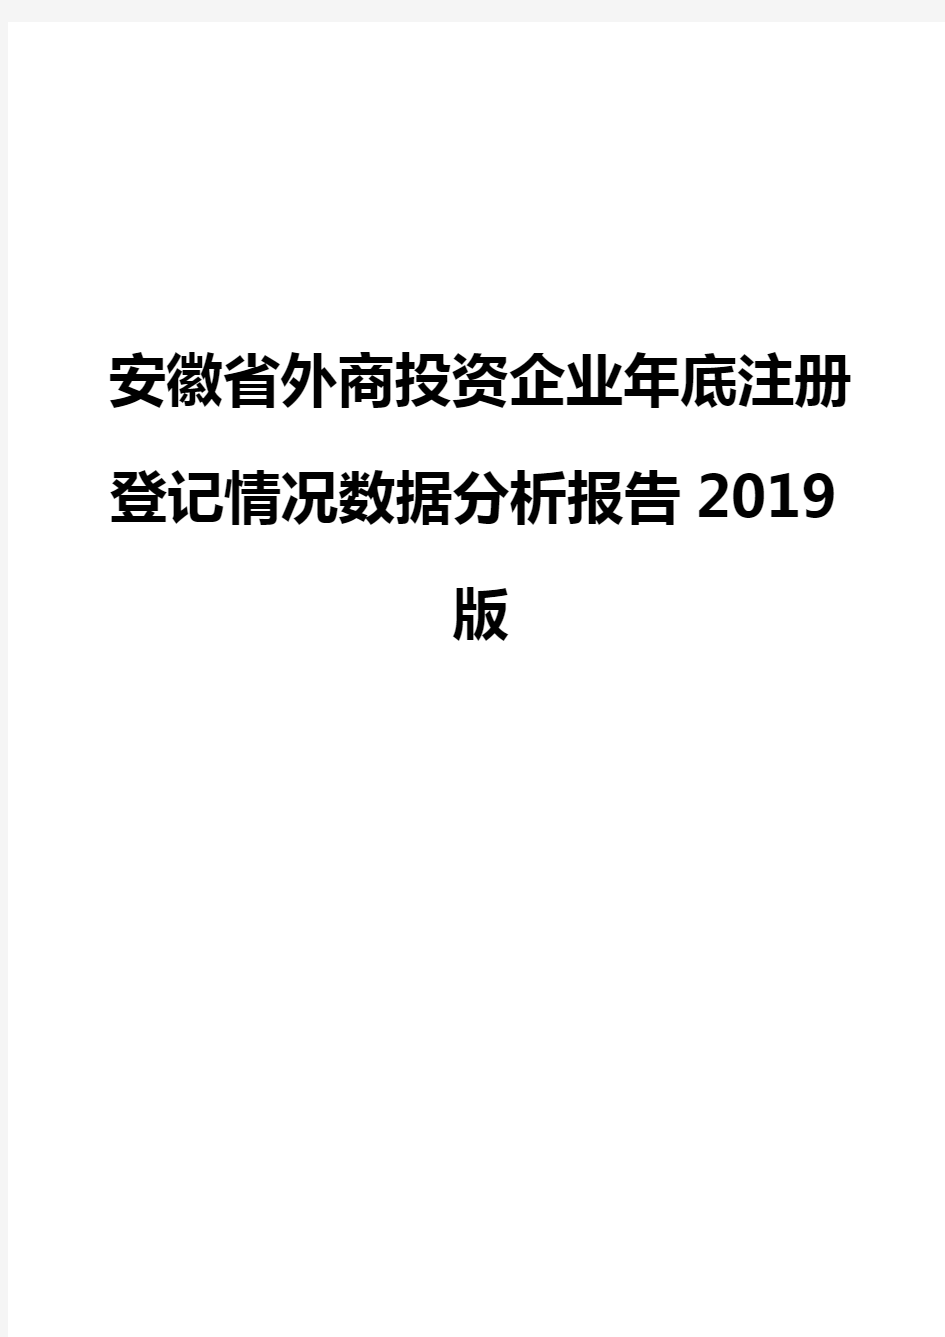 安徽省外商投资企业年底注册登记情况数据分析报告2019版